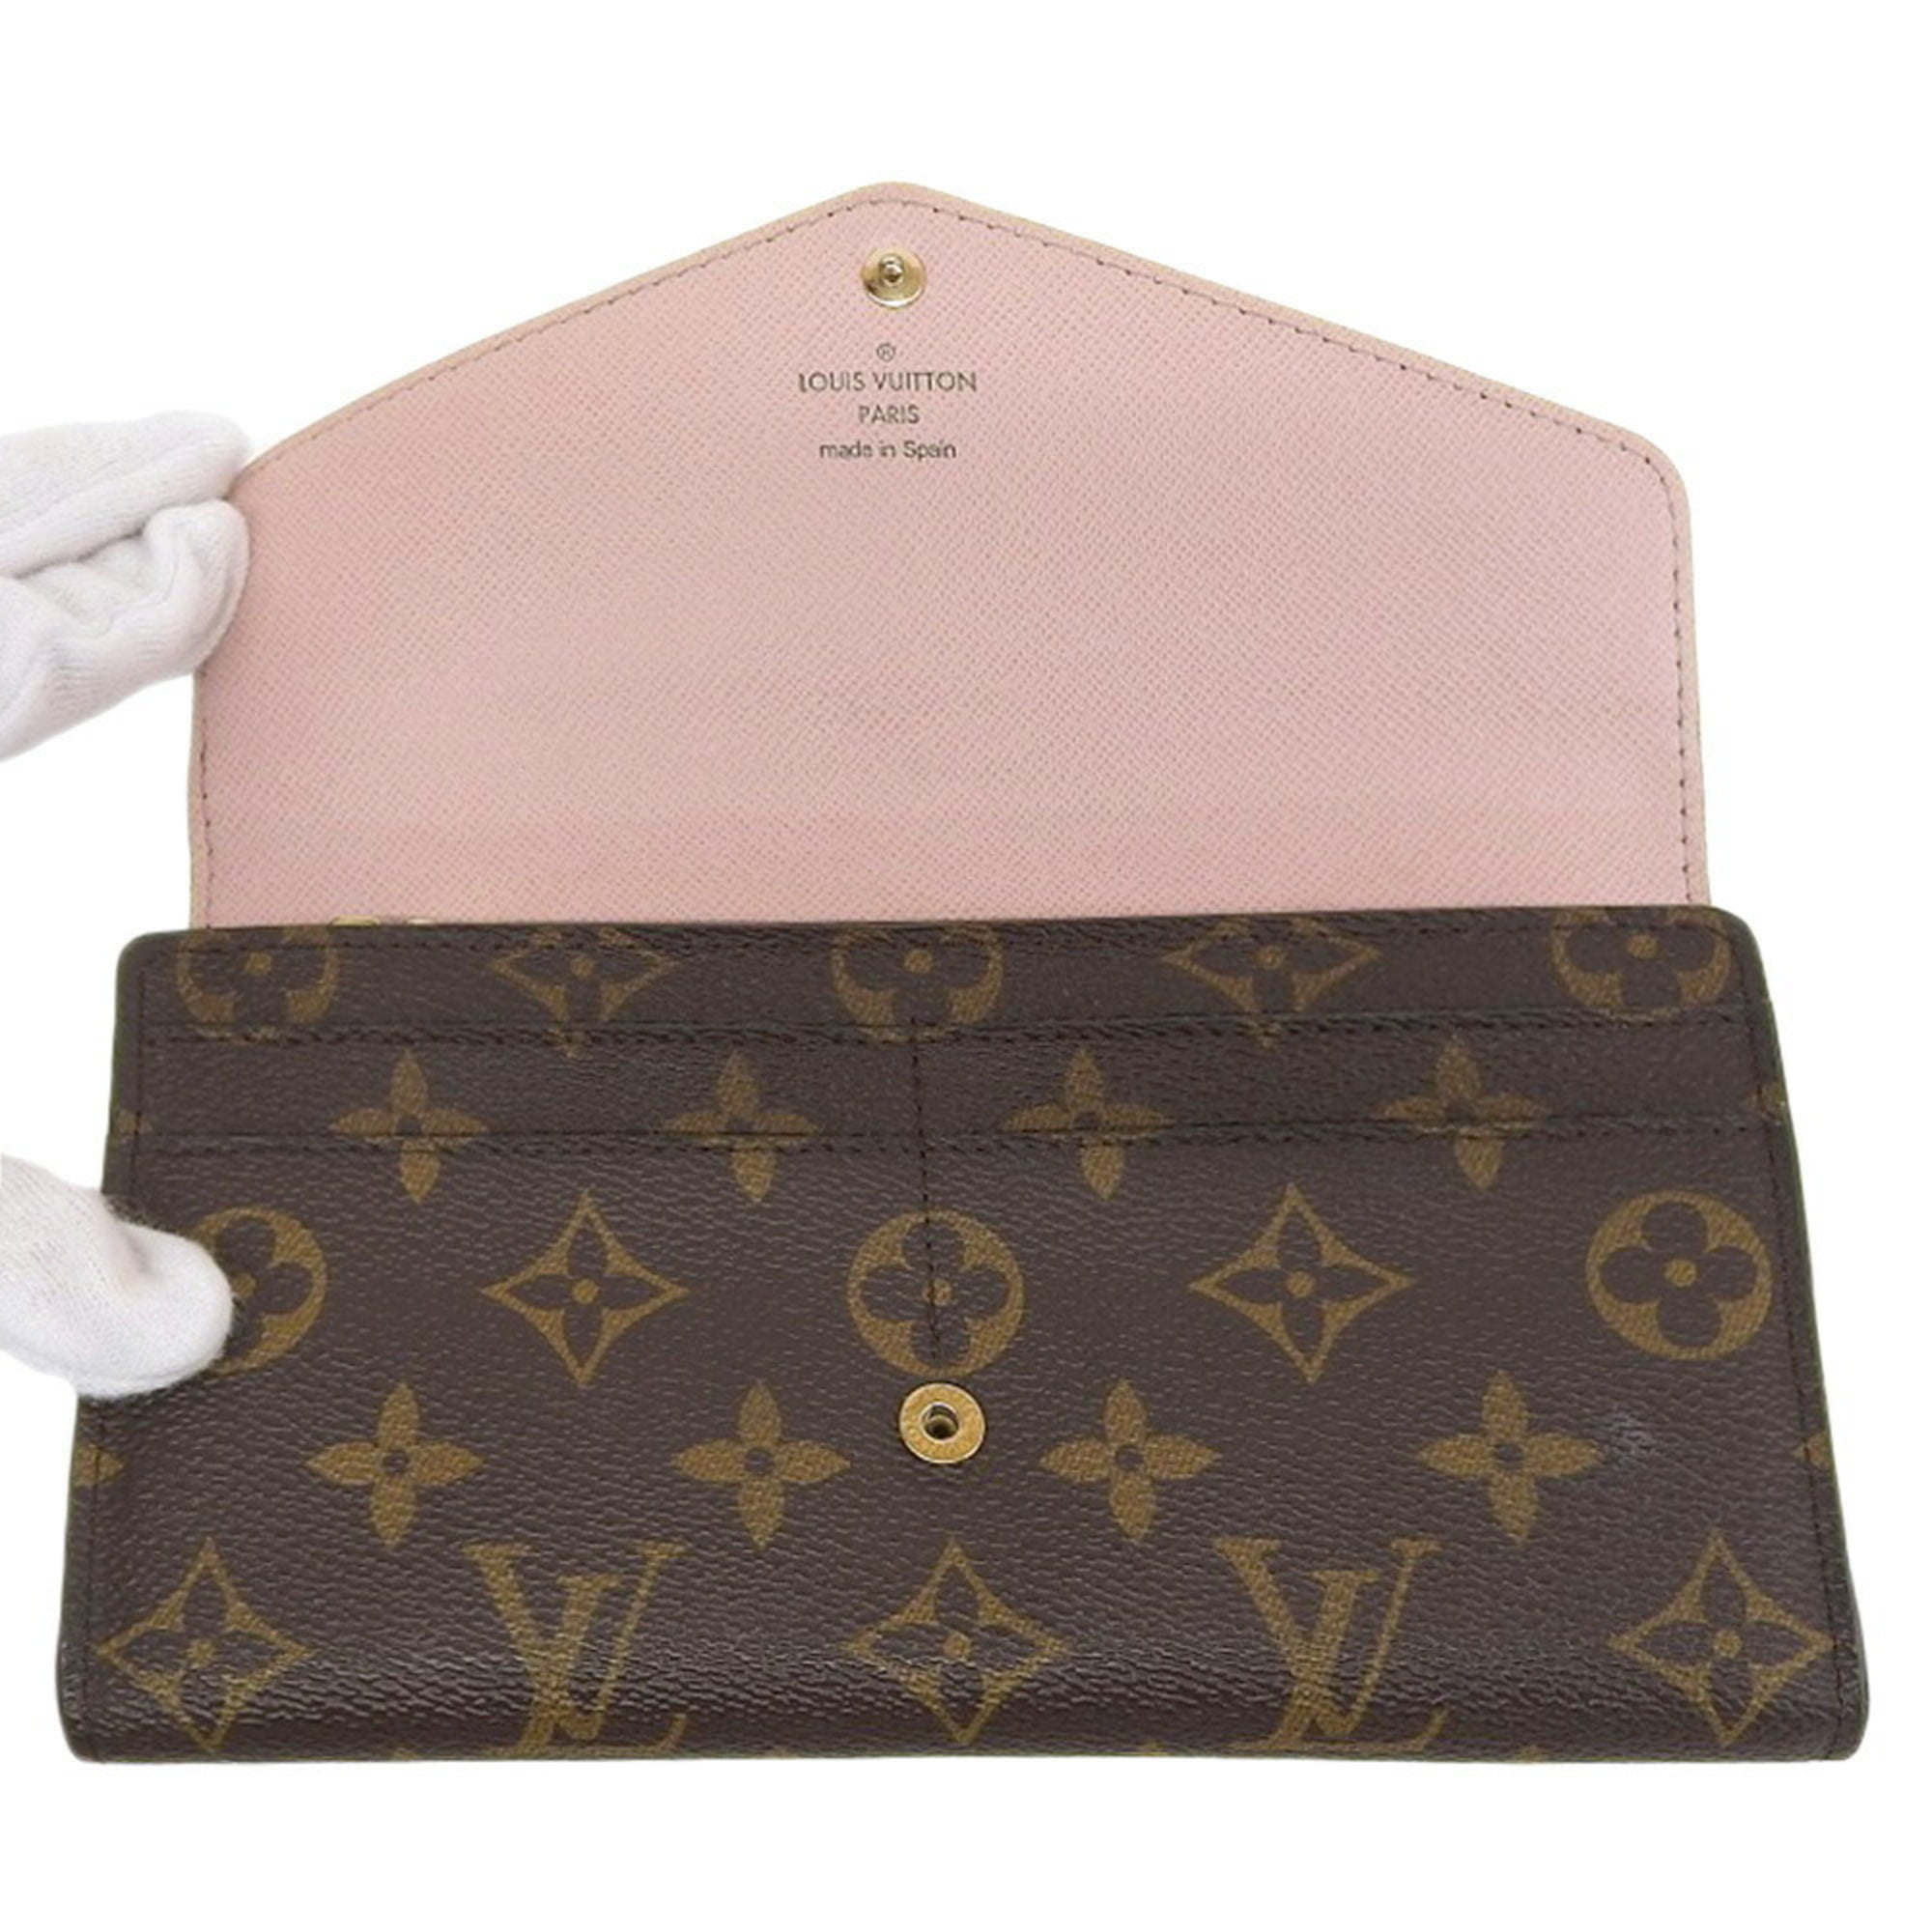 Authenticated used Louis Vuitton Louis Vuitton Monogram Portefeuille Sarah Pink Long Wallet Rose Ballerine M62235, Adult Unisex, Size: (HxWxD): 10.5cm